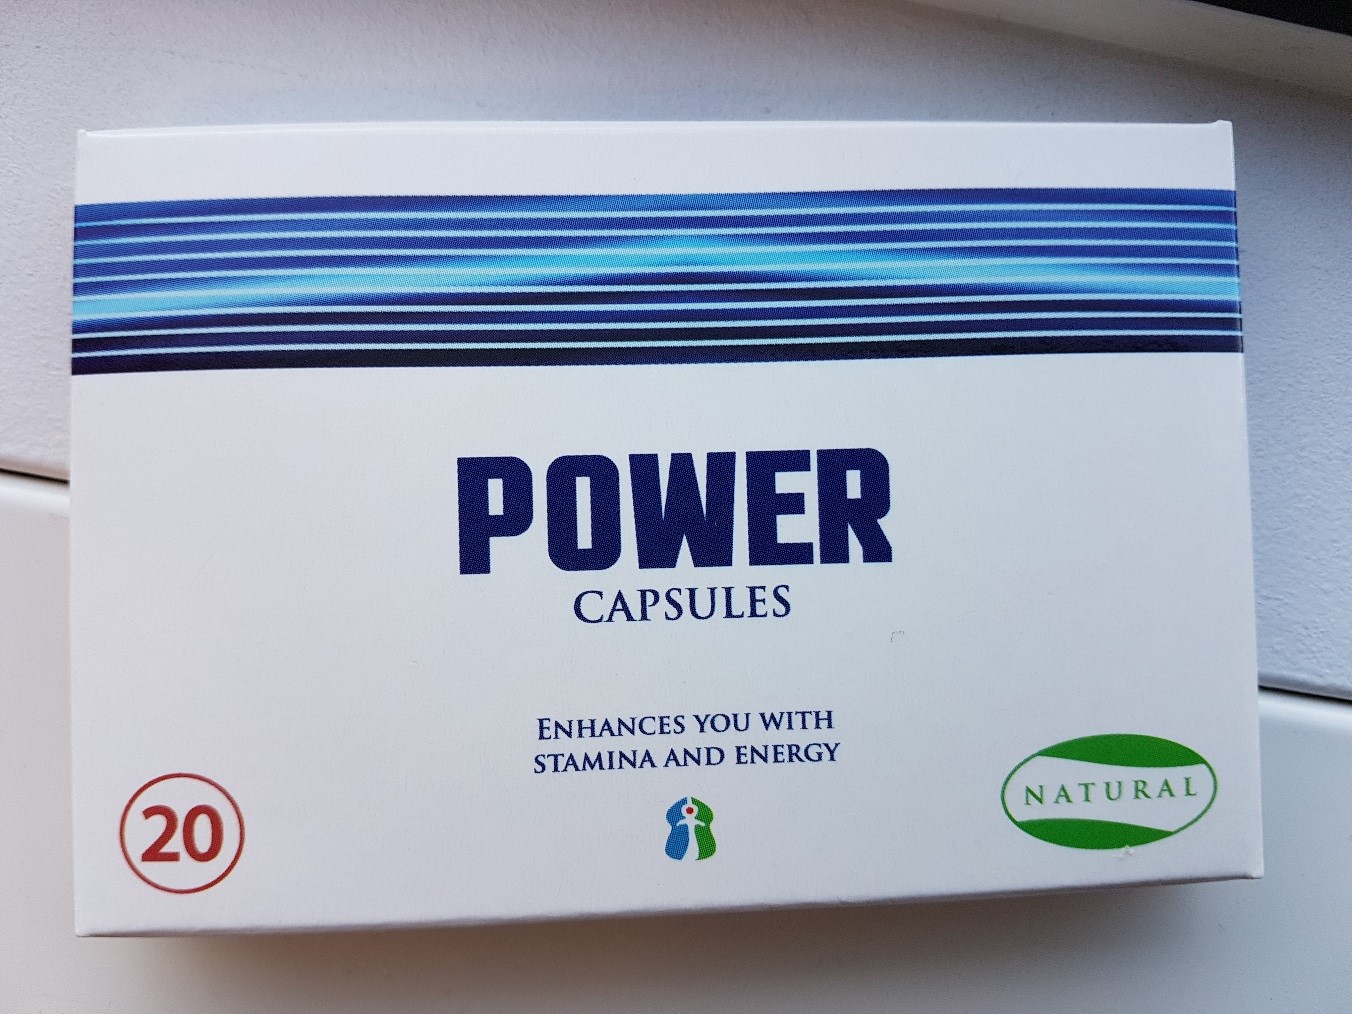 Billede af det ulovlige produkt: Power Capsules